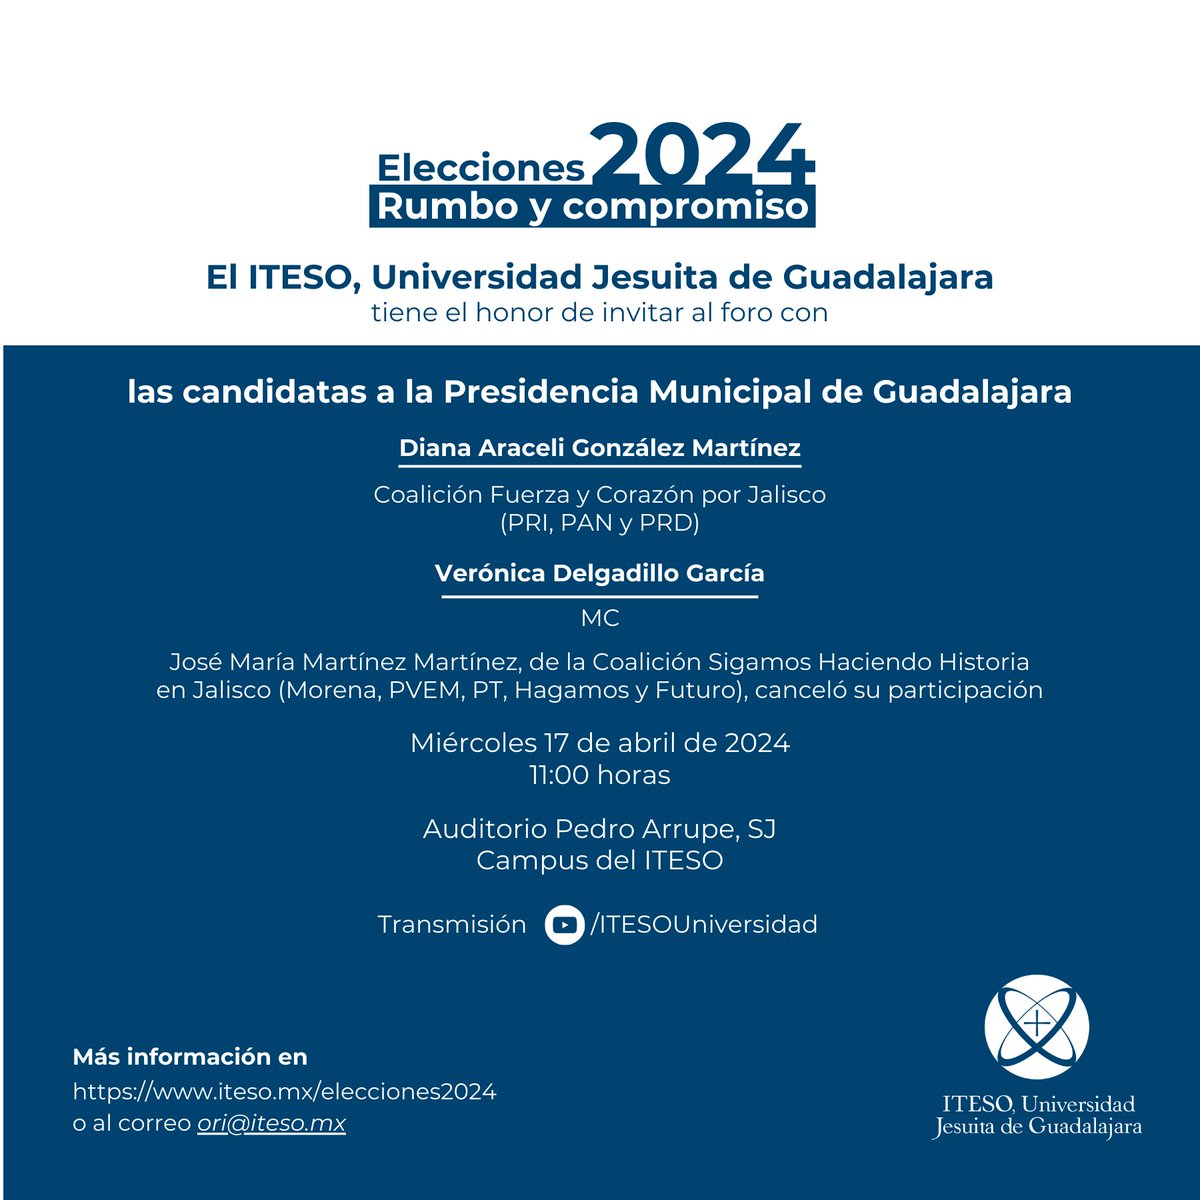 #Elecciones2024MX #ForosITESO Las candidatas a la Presidencia Municipal de Guadalajara, @VeroDelgadilloG y @Dianagoma, dialogarán con la #ComunidadITESO en torno a sus propuestas de campaña 🗳️ 🗓️ 17 de abril 🕙 11:00 hrs. 📍 Aud. Pedro Arrupe